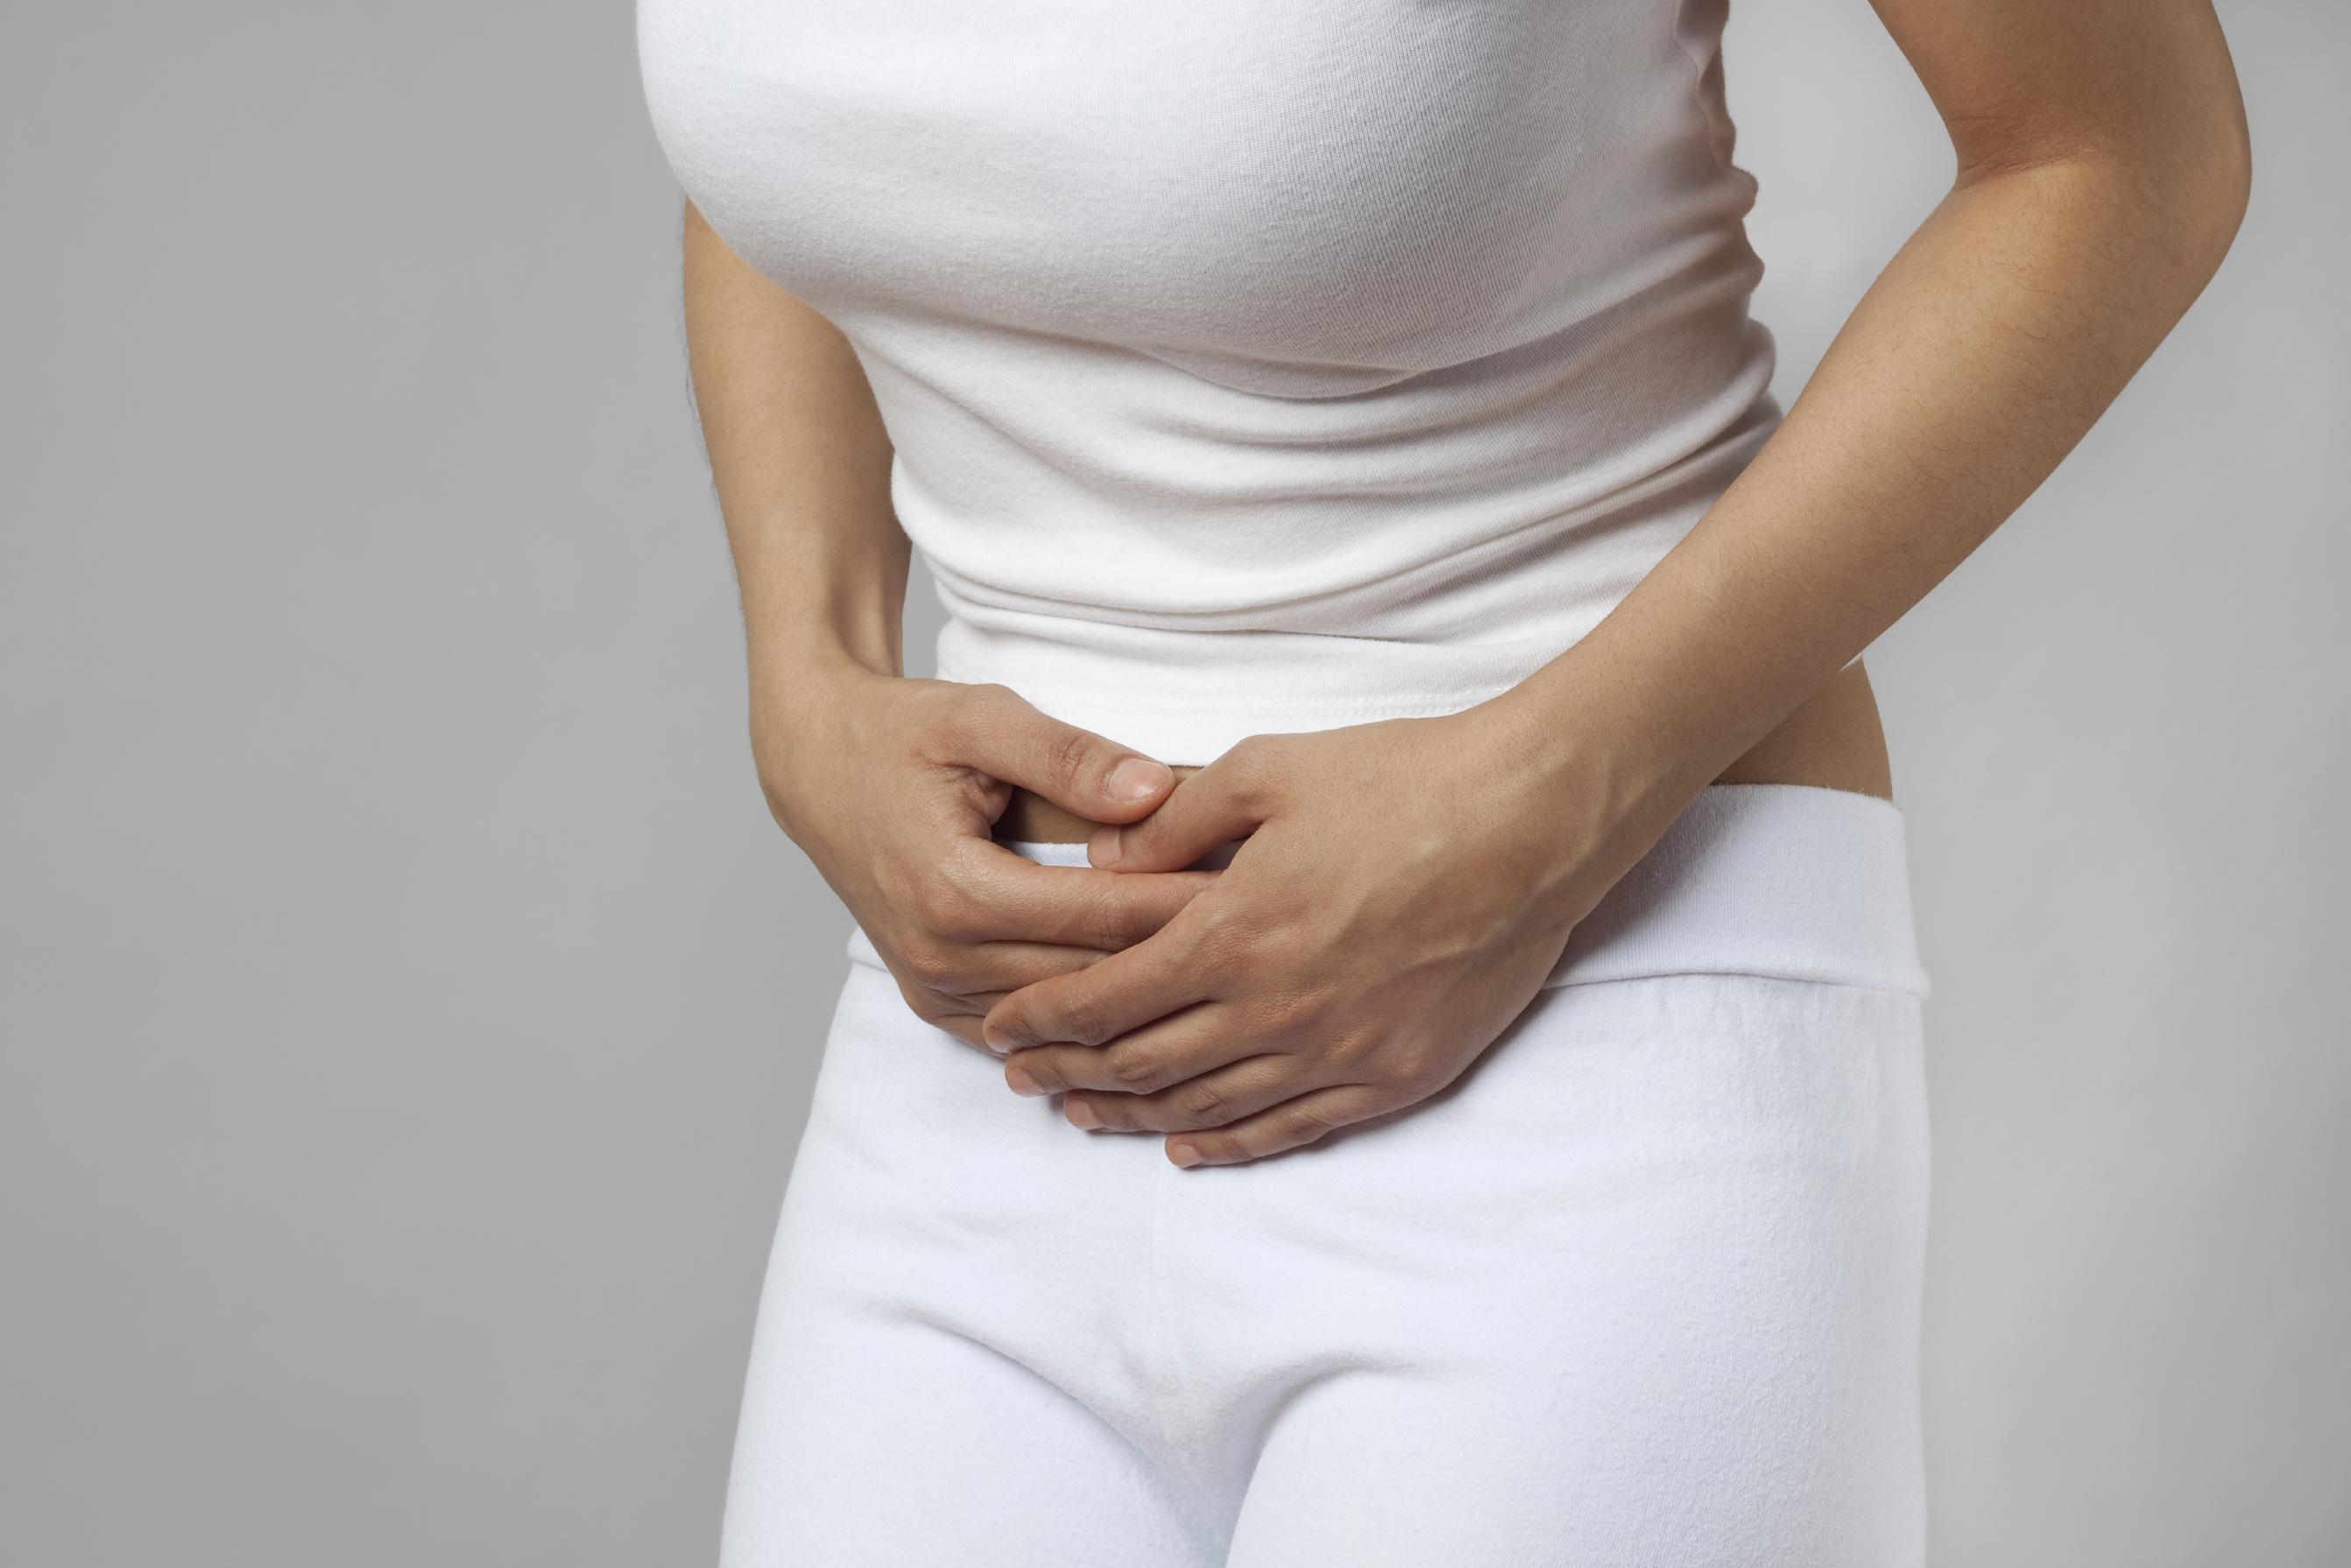 Les occlusions intestinales aiguës - Symptômes et traitement ...